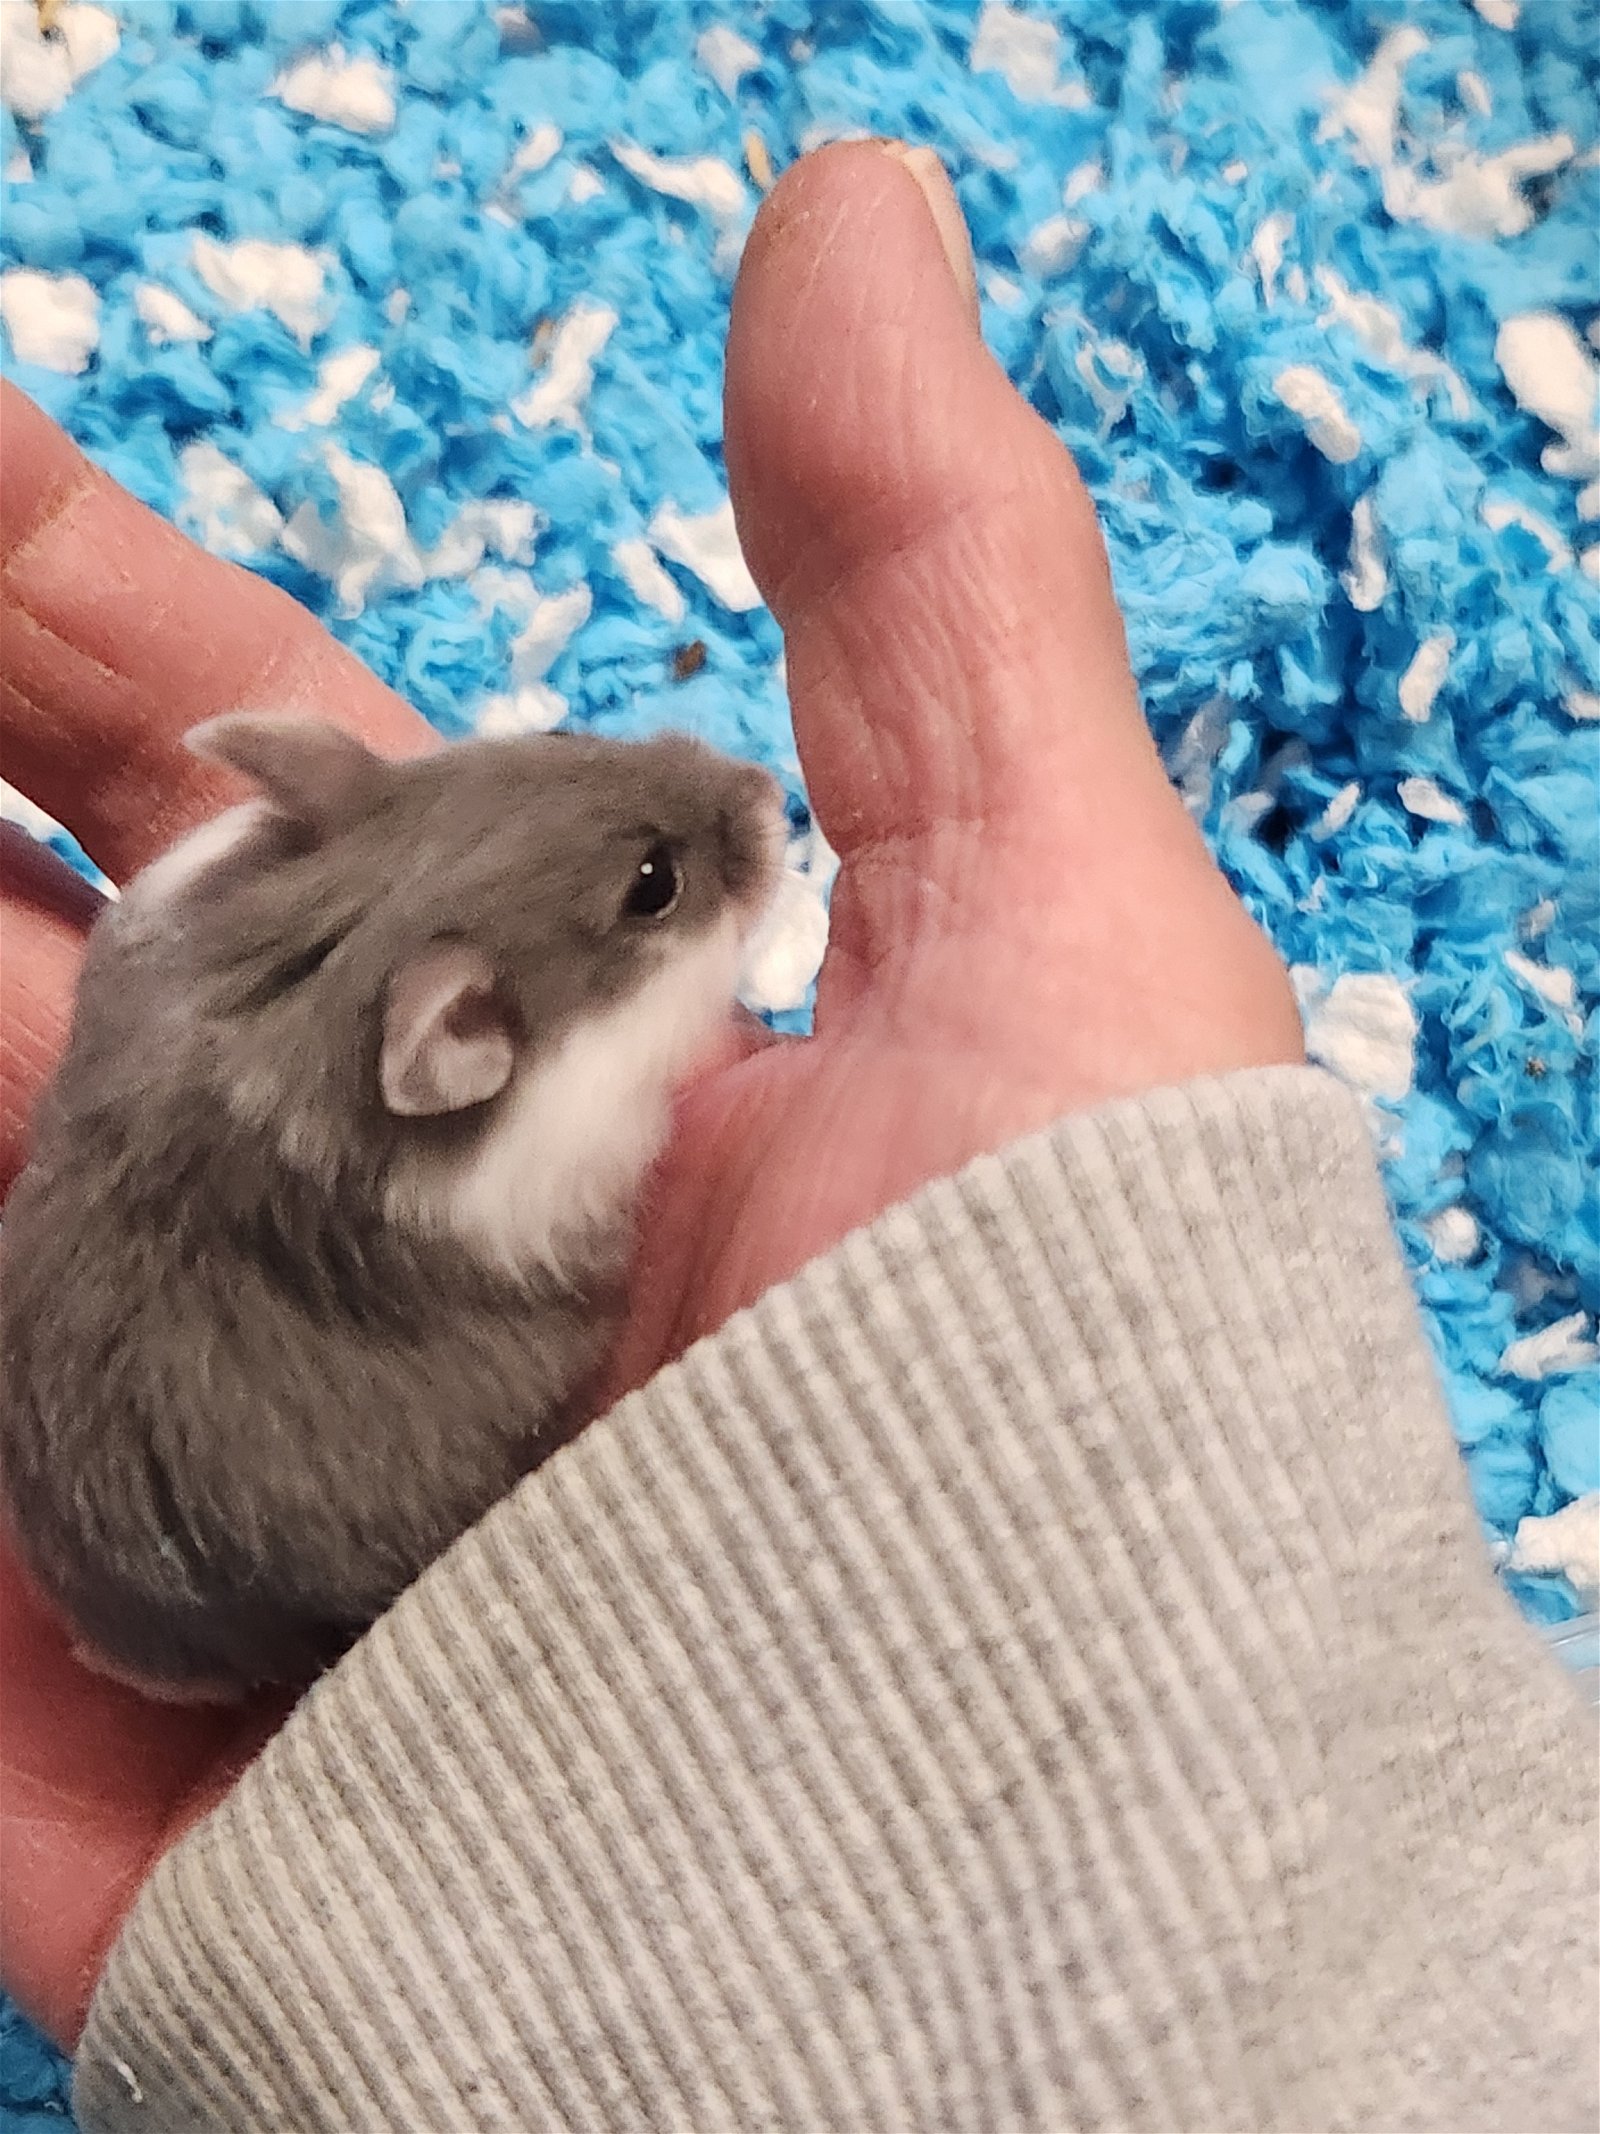 adoptable Hamster in Philadelphia, PA named Allison